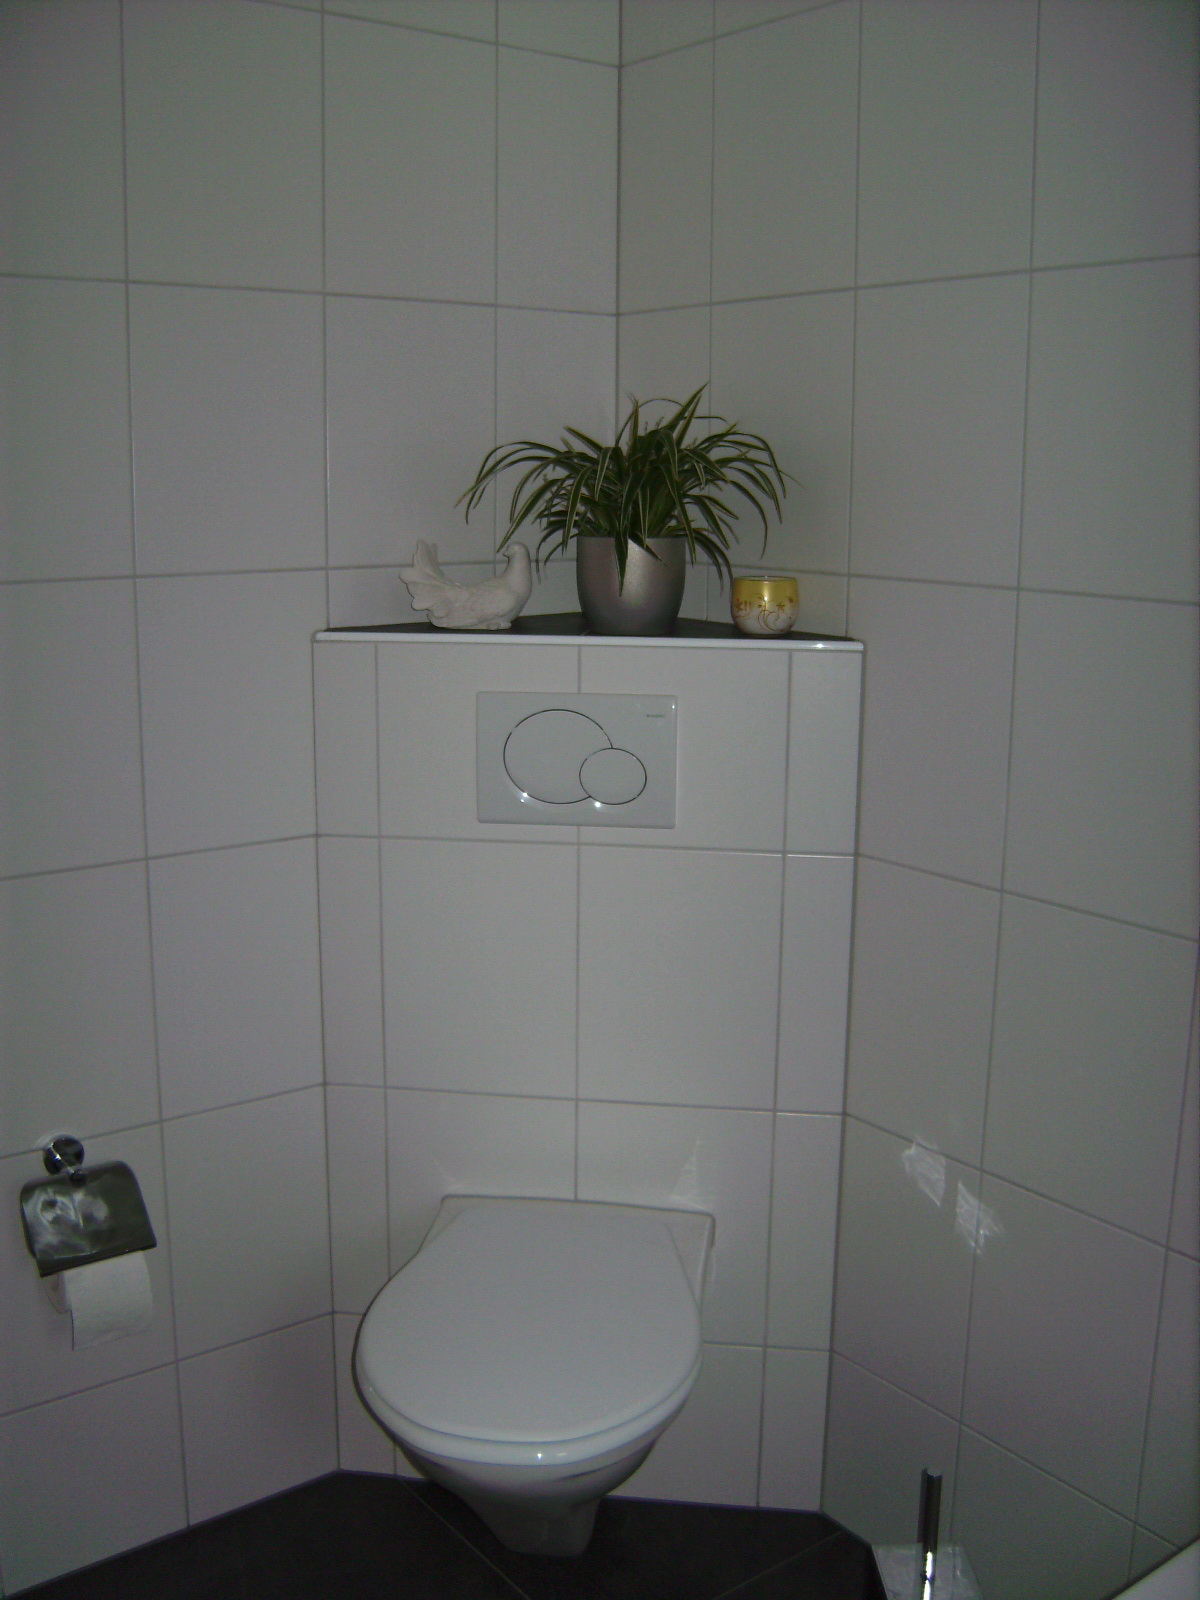 Wand WC montiert auf mit Platten belegter Wand.